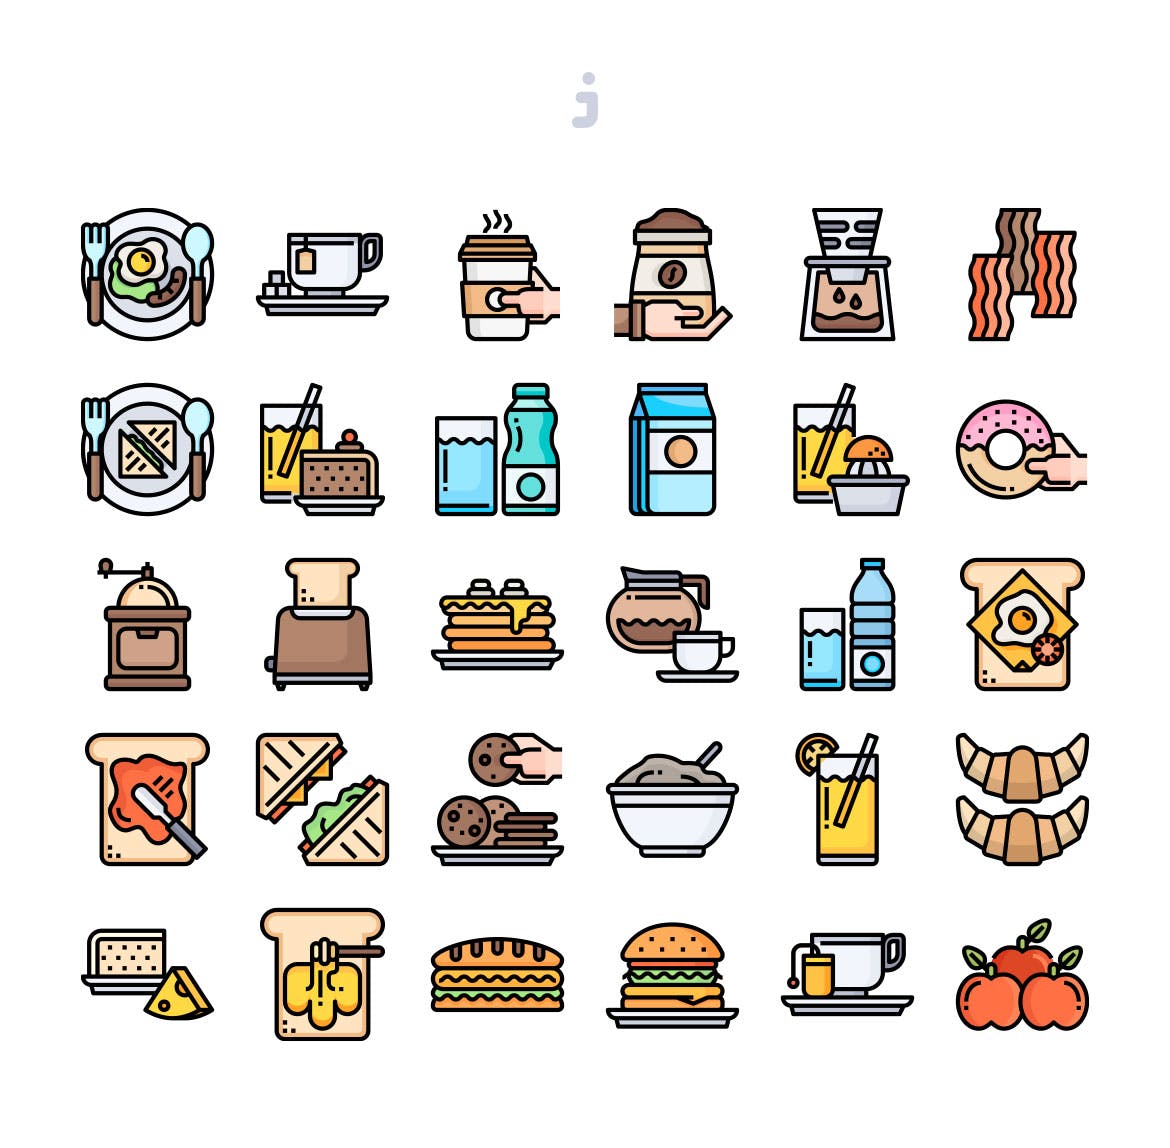 30枚早餐主题矢量图标 30 Breakfast Icons插图(1)